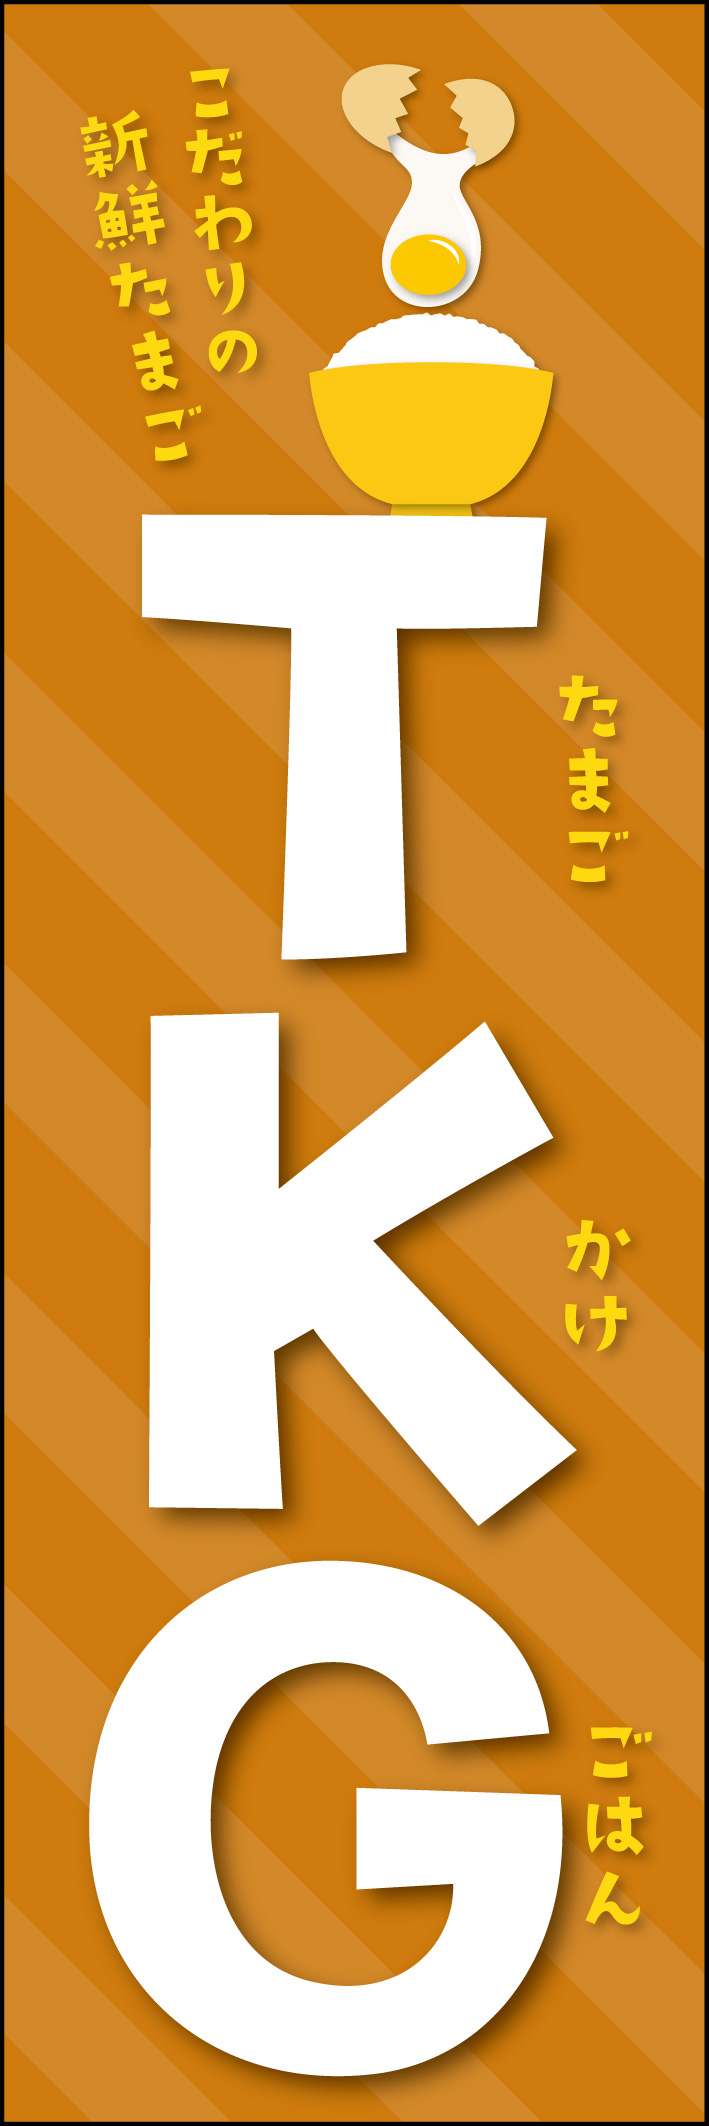 TKG（たまごかけごはん） 215_01 「TKG（たまごかけごはん）」のぼりです。TKGの文字が興味をそそるよう、日本語はあえて小さく載せています。（Y.M）